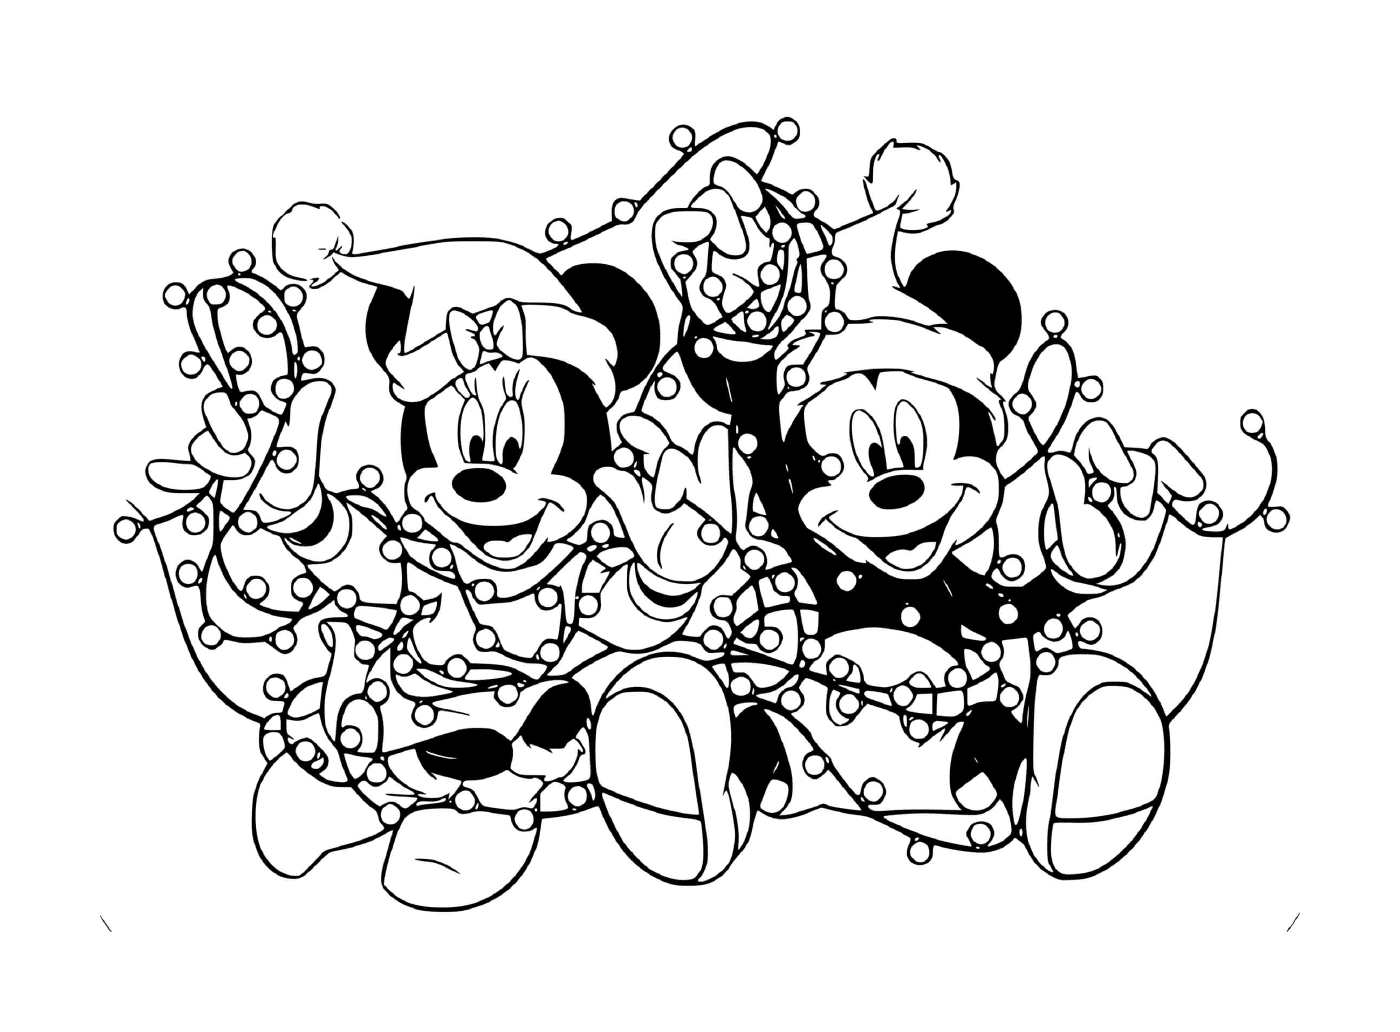  Mickey e Minnie si sono impigliati nelle luci 